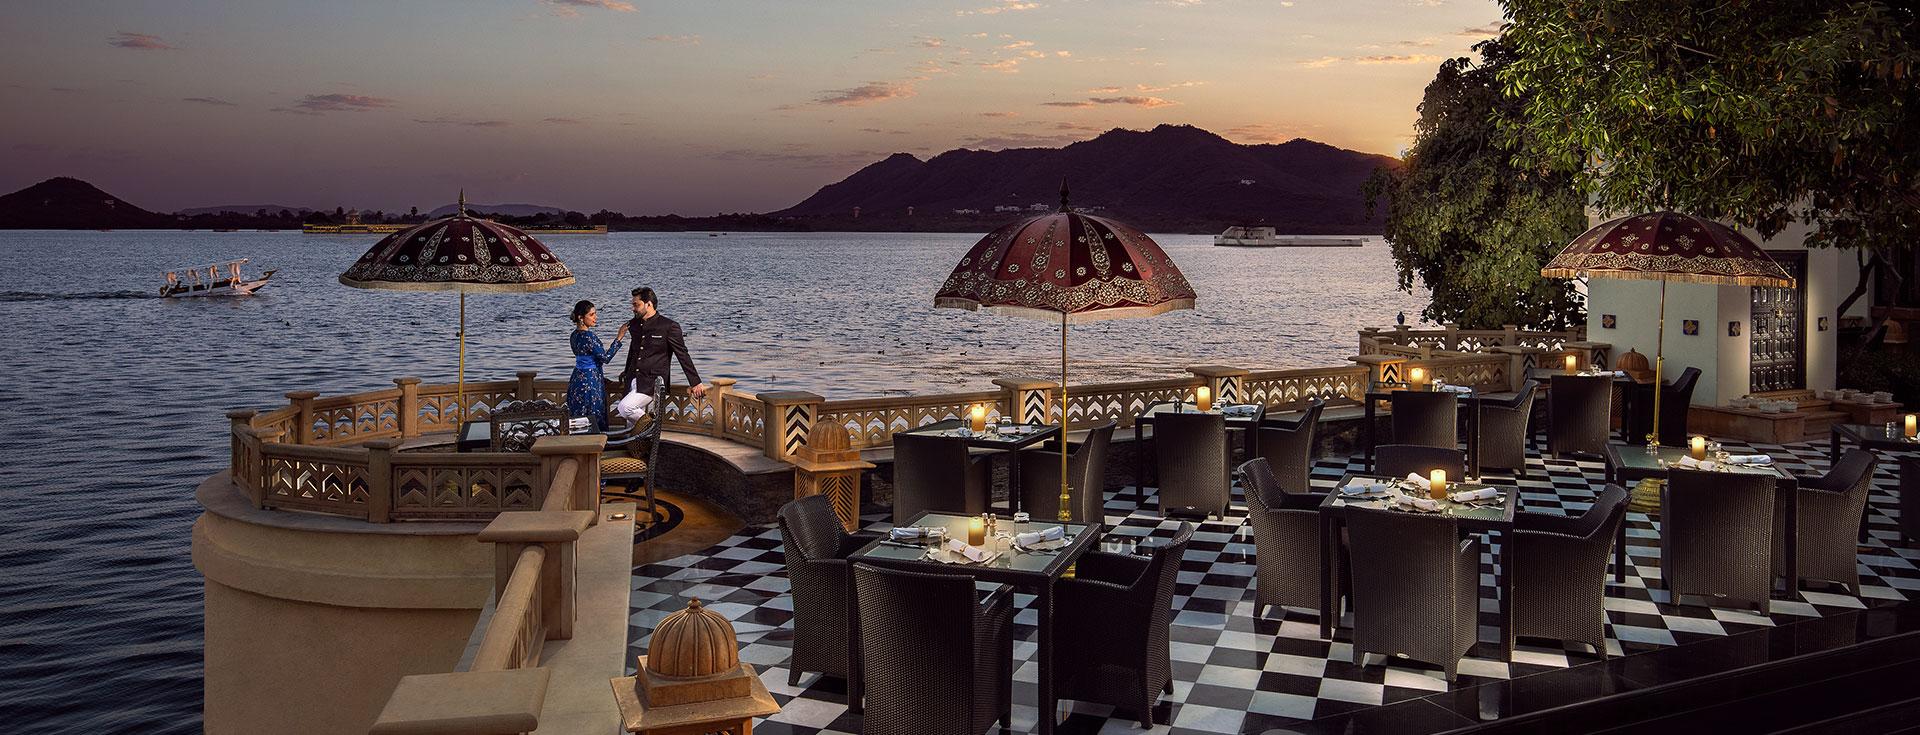 Gợi ý 5 nhà hàng lãng mạn nhất thế giới dành cho các cặp đôi